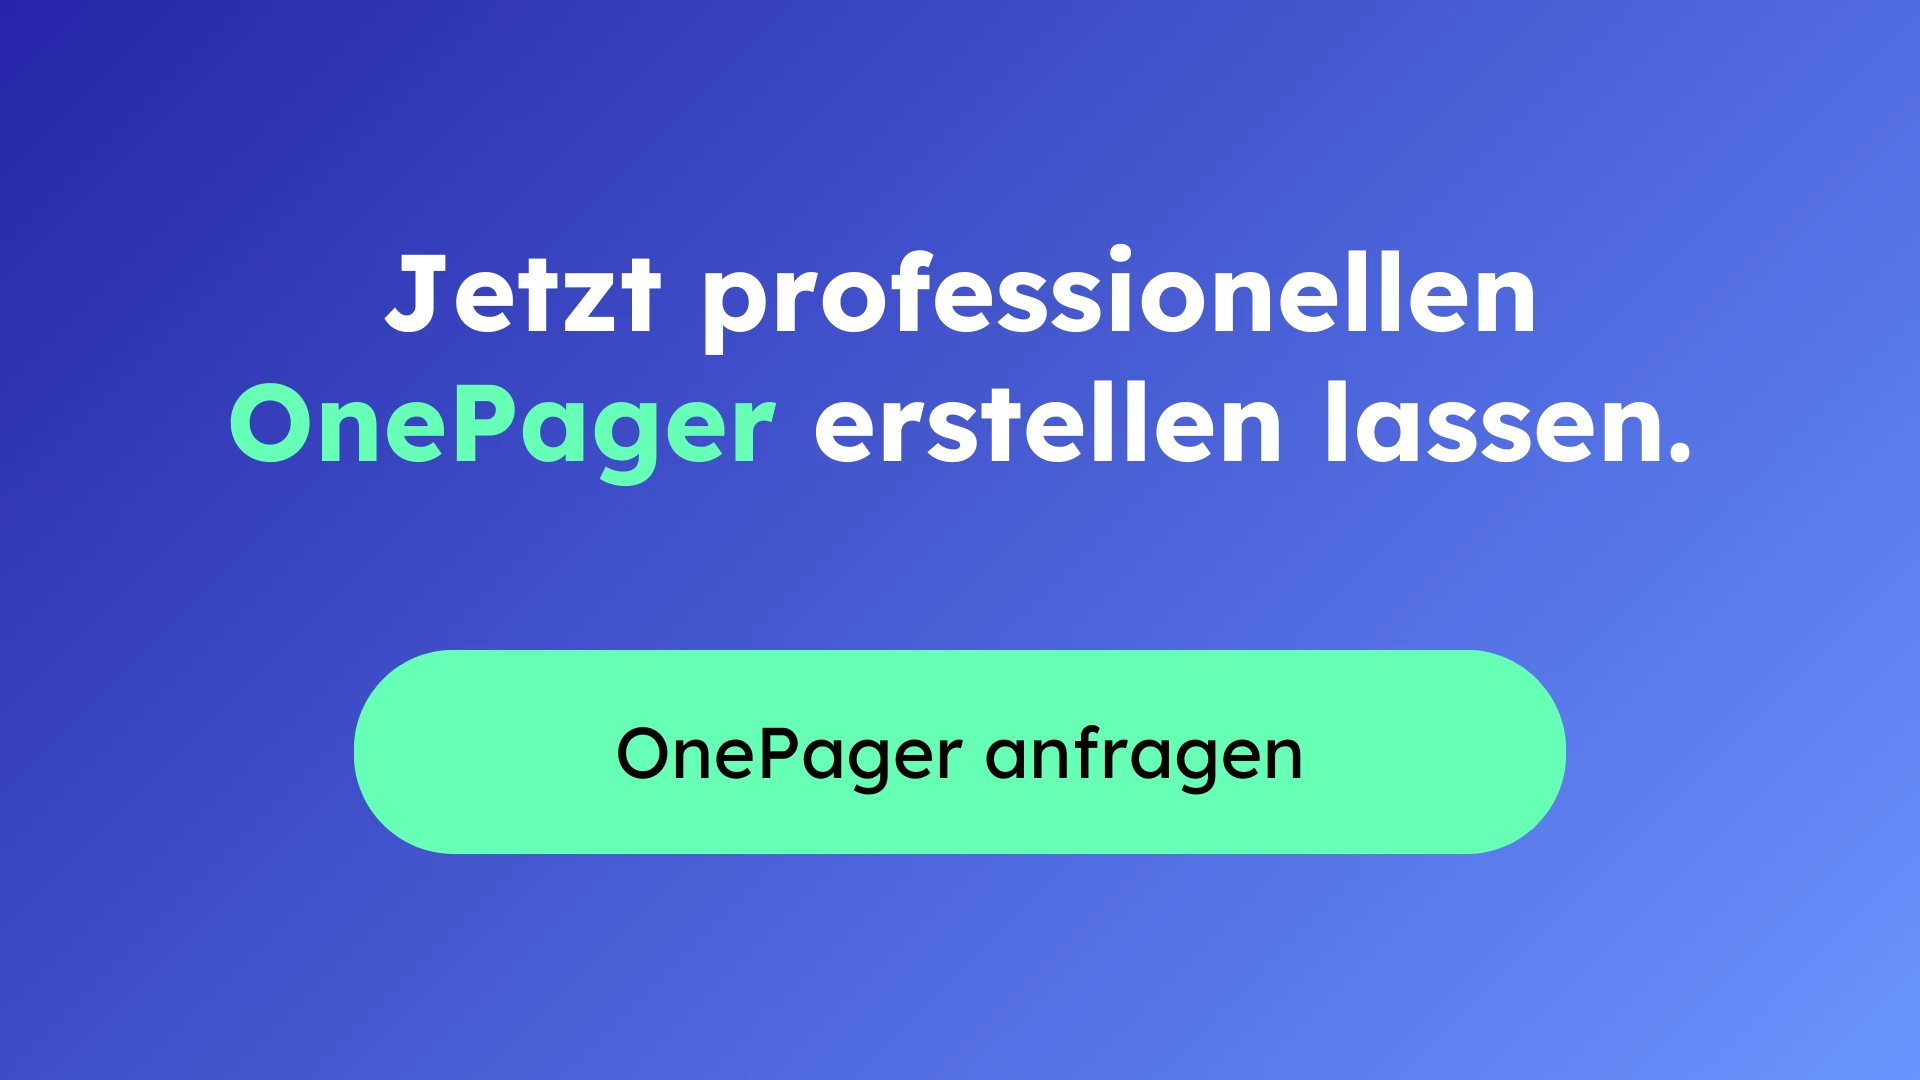 Was ist ein OnePager? - So kannst du einen One Pager erstellen - Anfrage